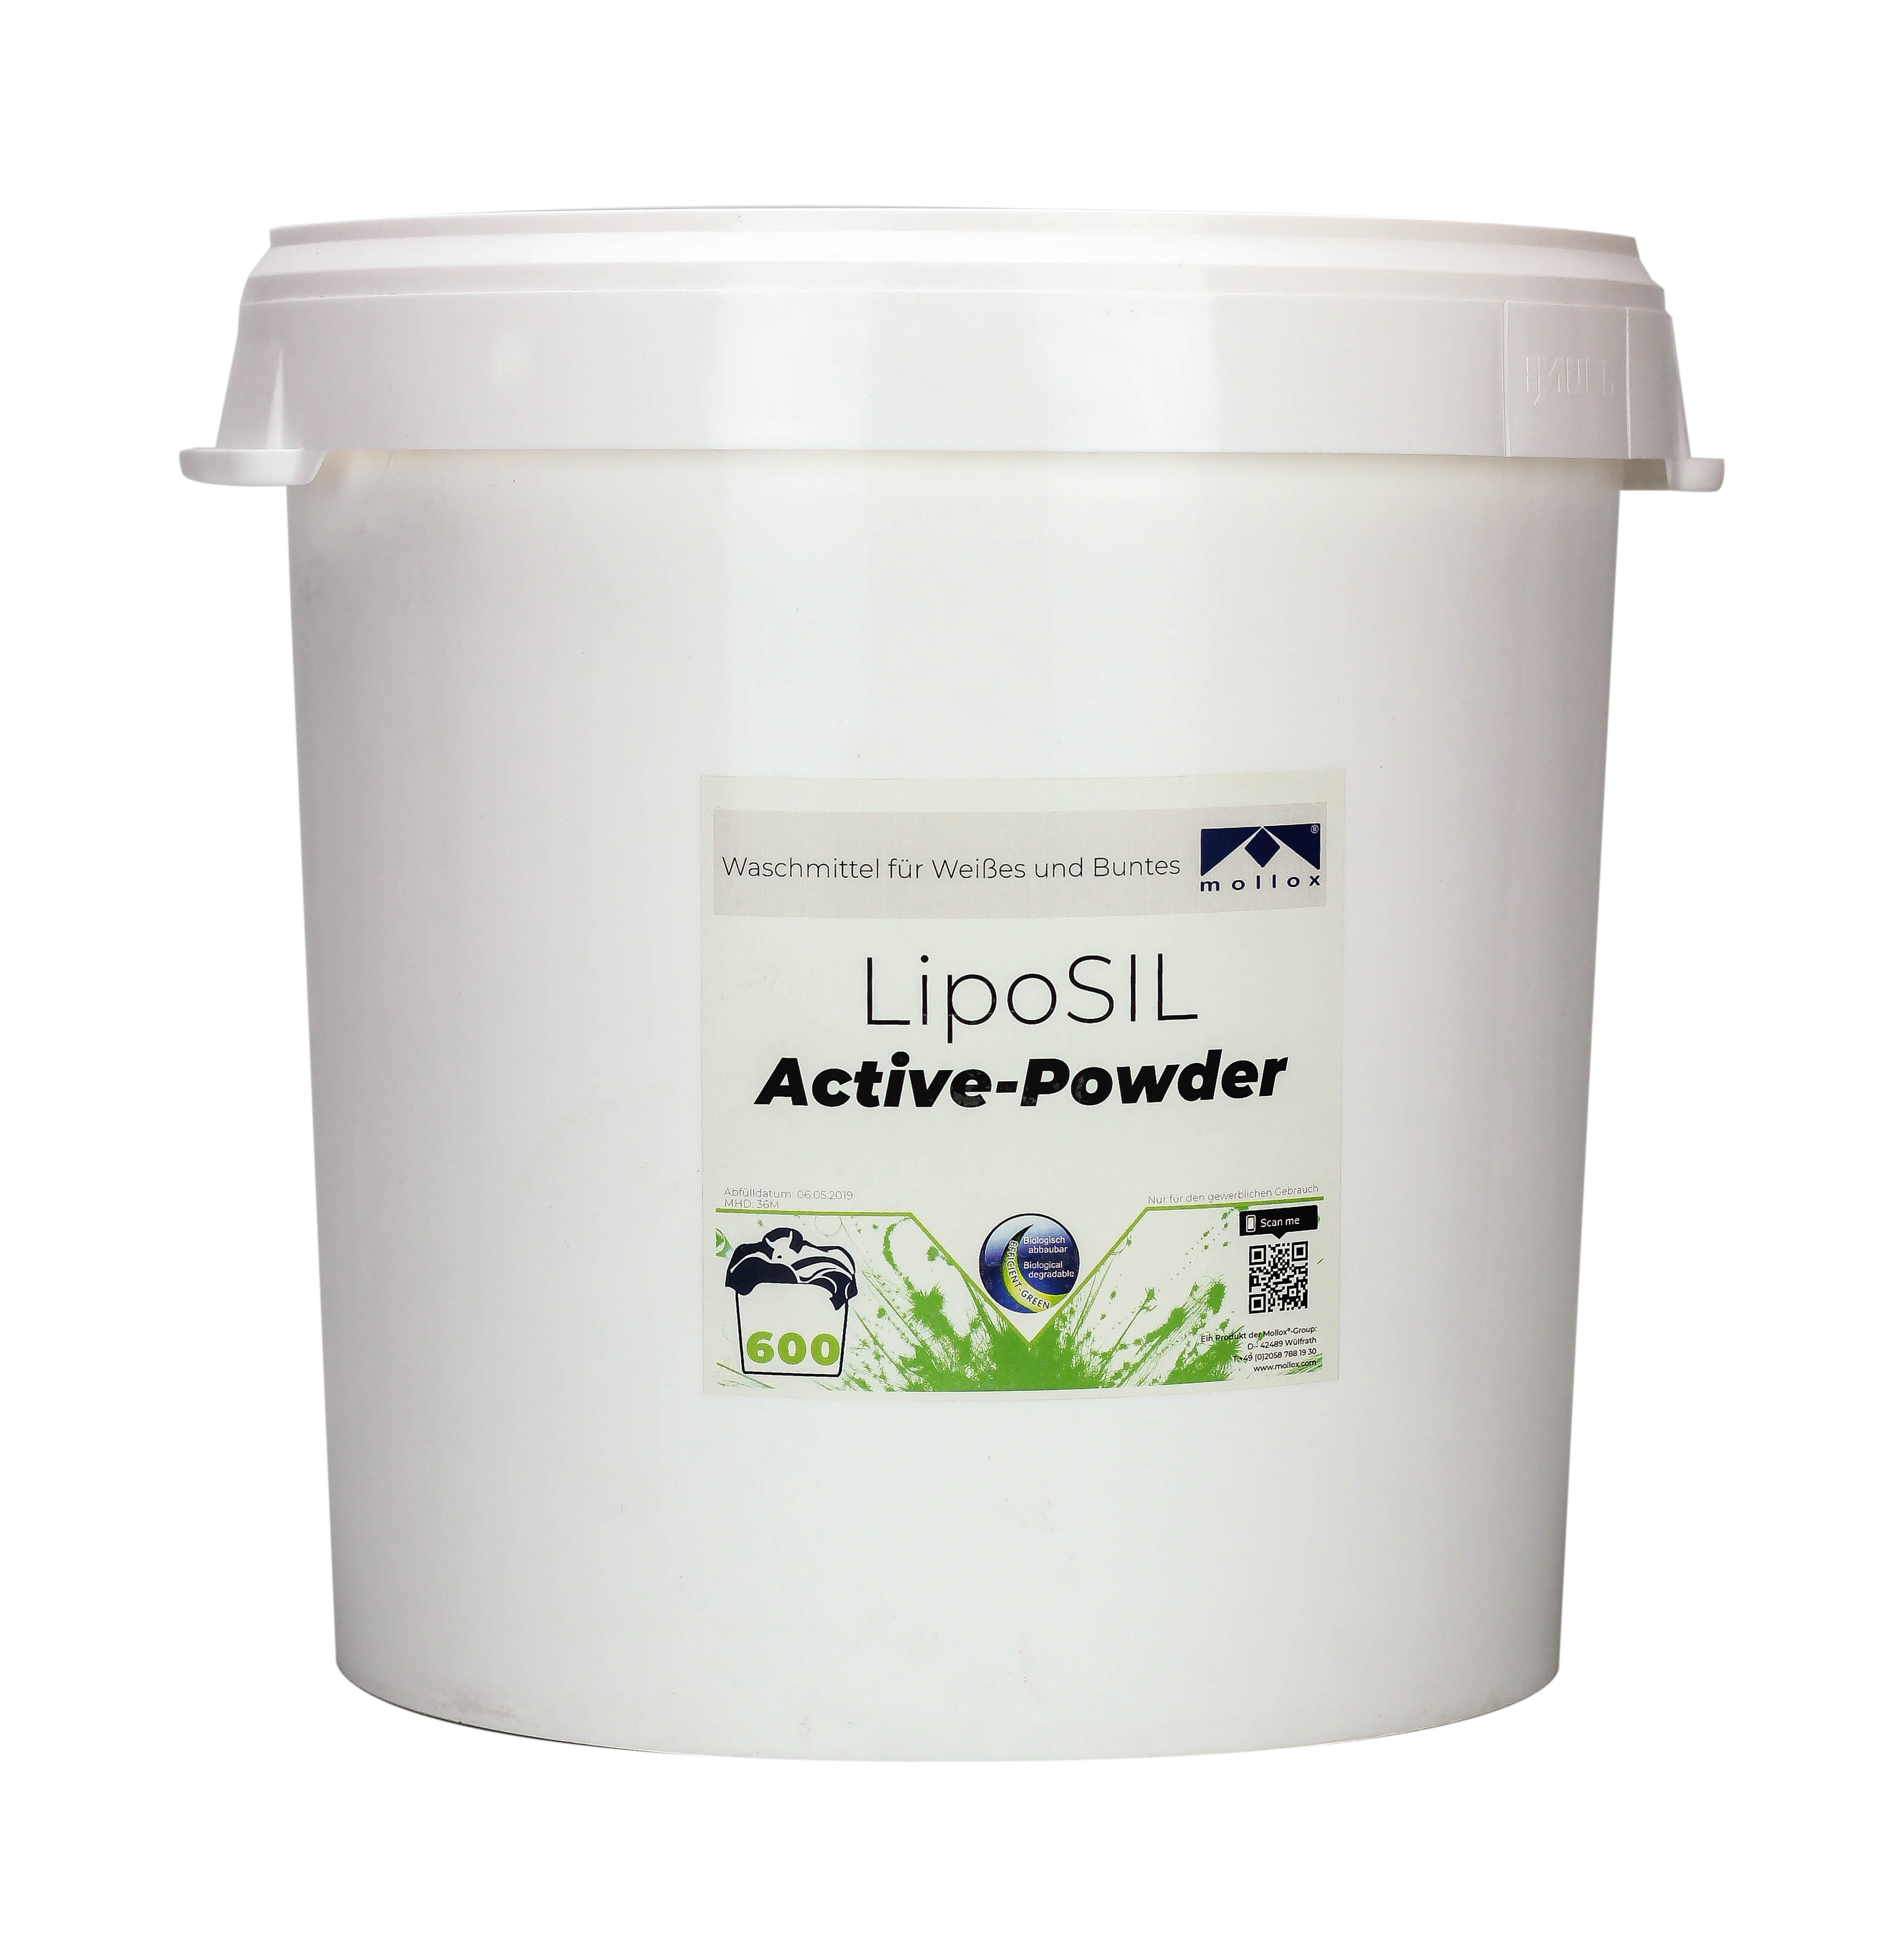 Premium Waschmittel LipoSil Active-Powder für Weißes und Buntes